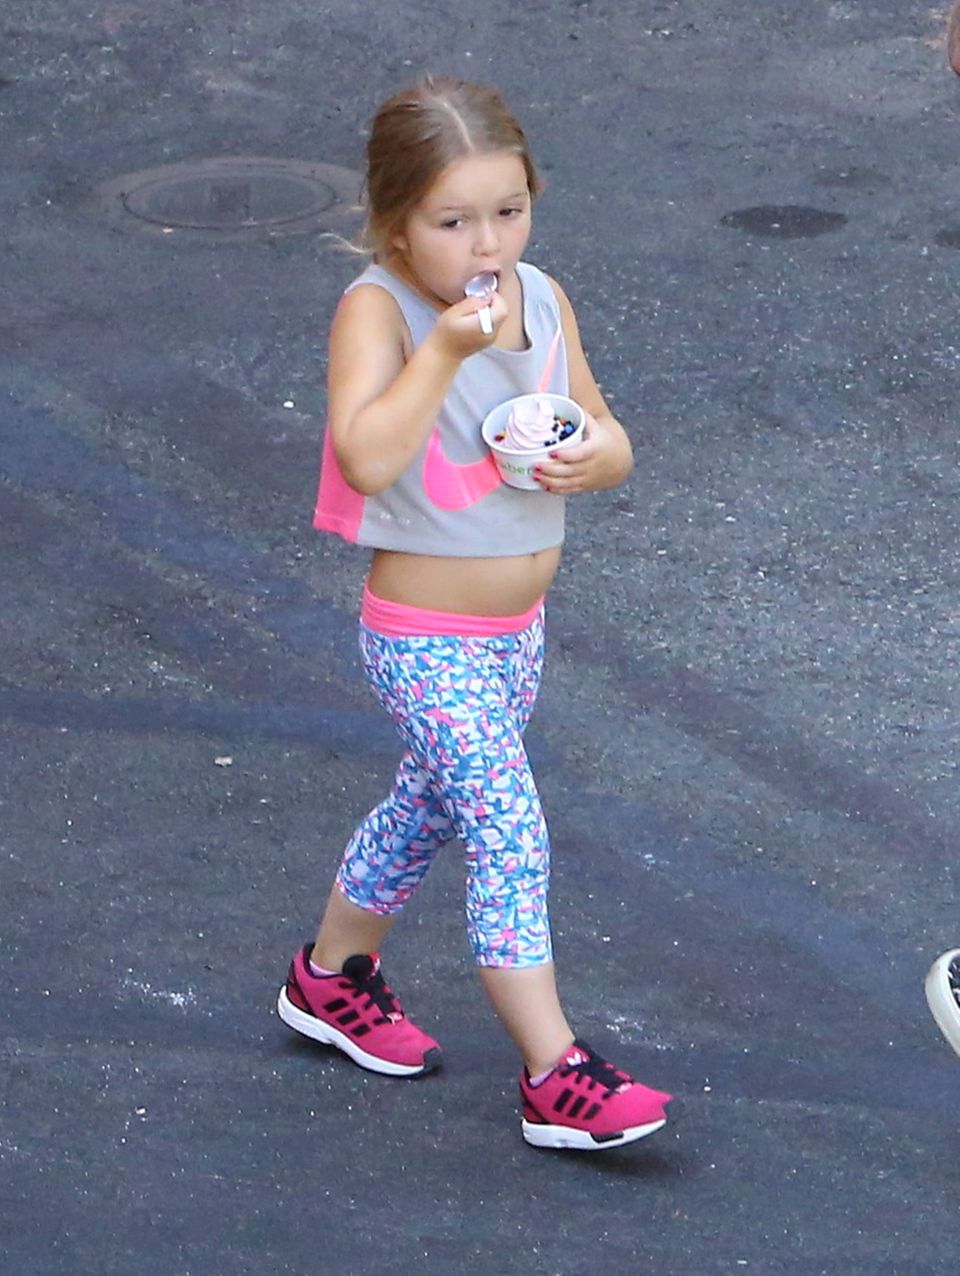 Mit vier Jahren macht klein Harper einen auf Sporty Spice. Im kurzen Top von Nike schaut ihr Bäuchlein ganz süß hervor. Ihr Eis lässt sie sich auch in Sport-Klamotte schmecken.